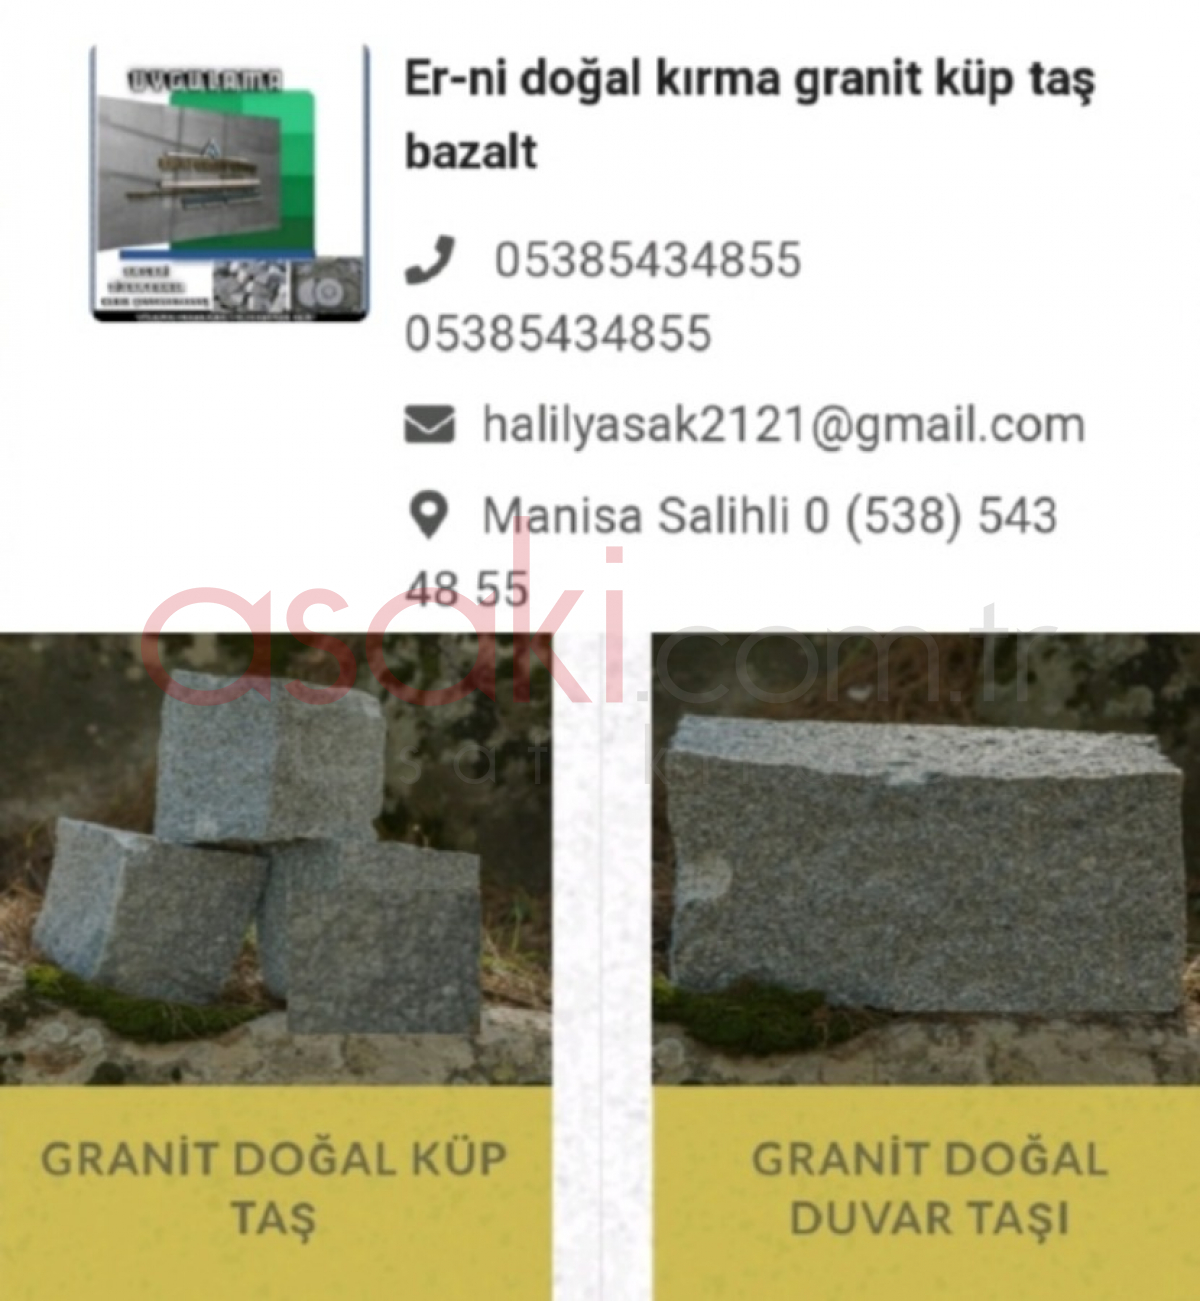 Er-ni granit küp taş uygulama ekibi İzmir - Büyük 7